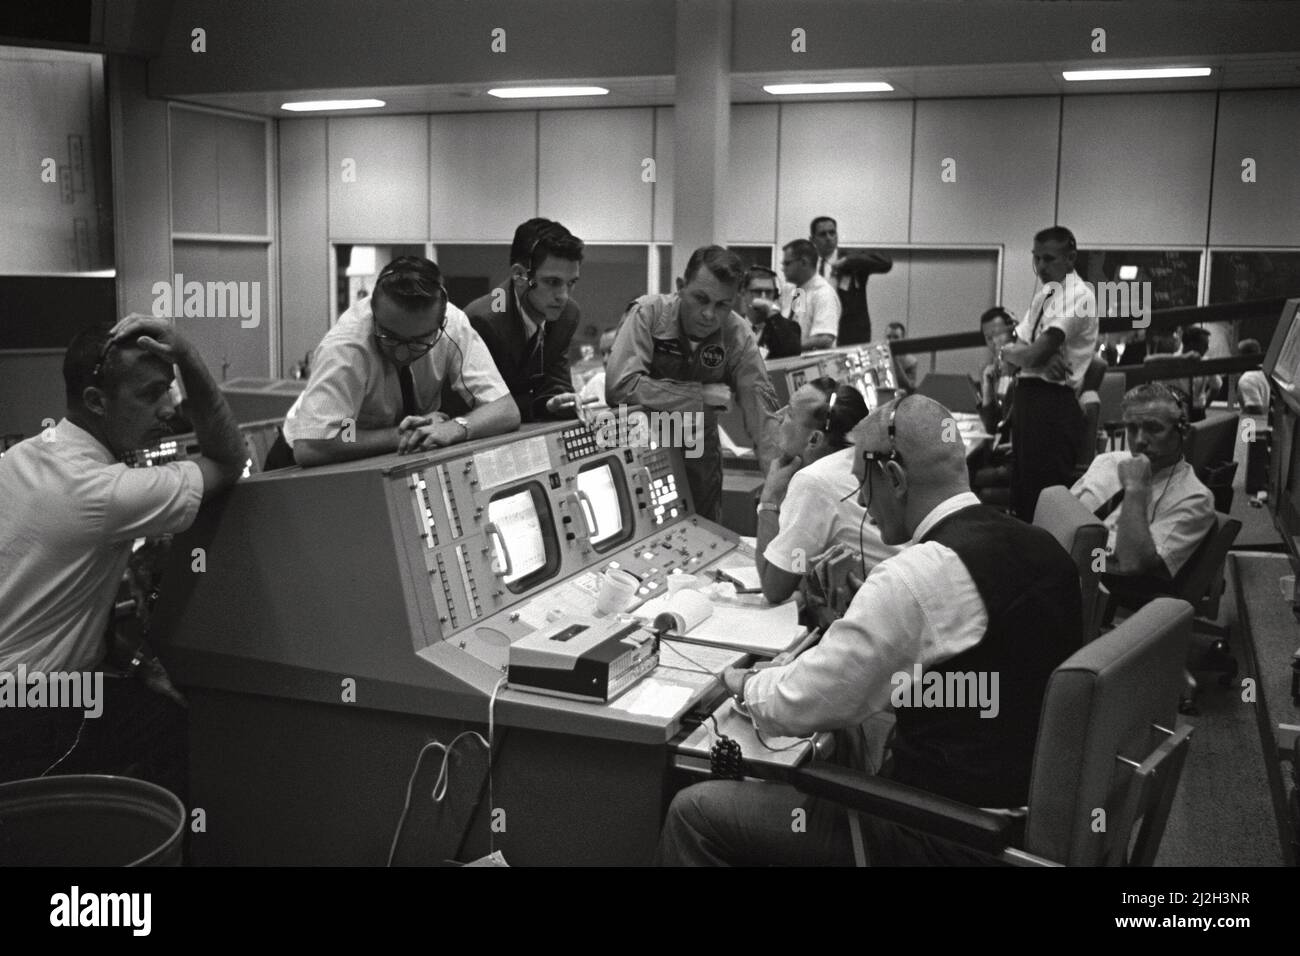 Vue de la console des directeurs de vol du Centre de contrôle de mission (MCC), Houston, Texas, pendant le vol Gemini 5. Eugene F. Kranz (premier plan) et Christopher C. Kraft Jr. (Arrière-plan) sont assis sur la console. Le Dr Charles Berry (à gauche), un homme non identifié au centre et l'astronaute Elliot M. See, se trouvent devant la console. Banque D'Images